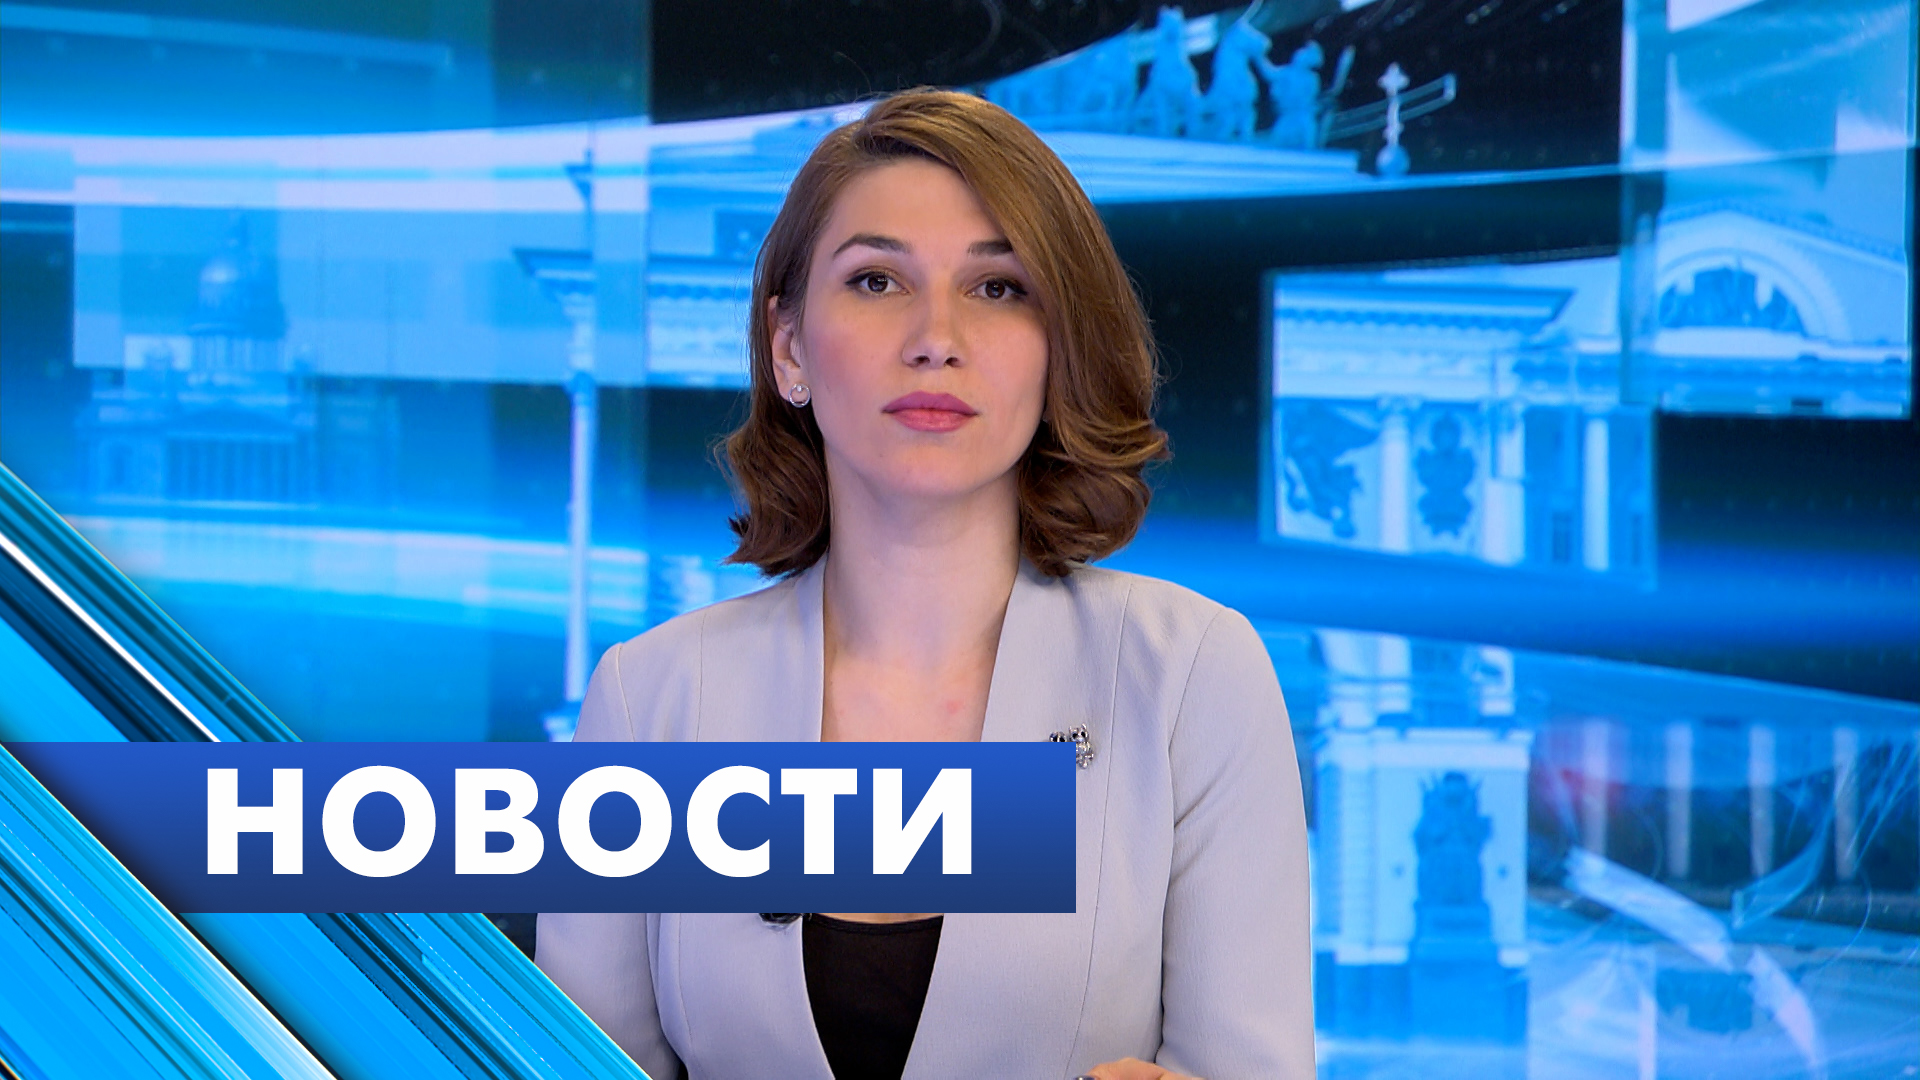 Главные новости Петербурга / 19 апреля